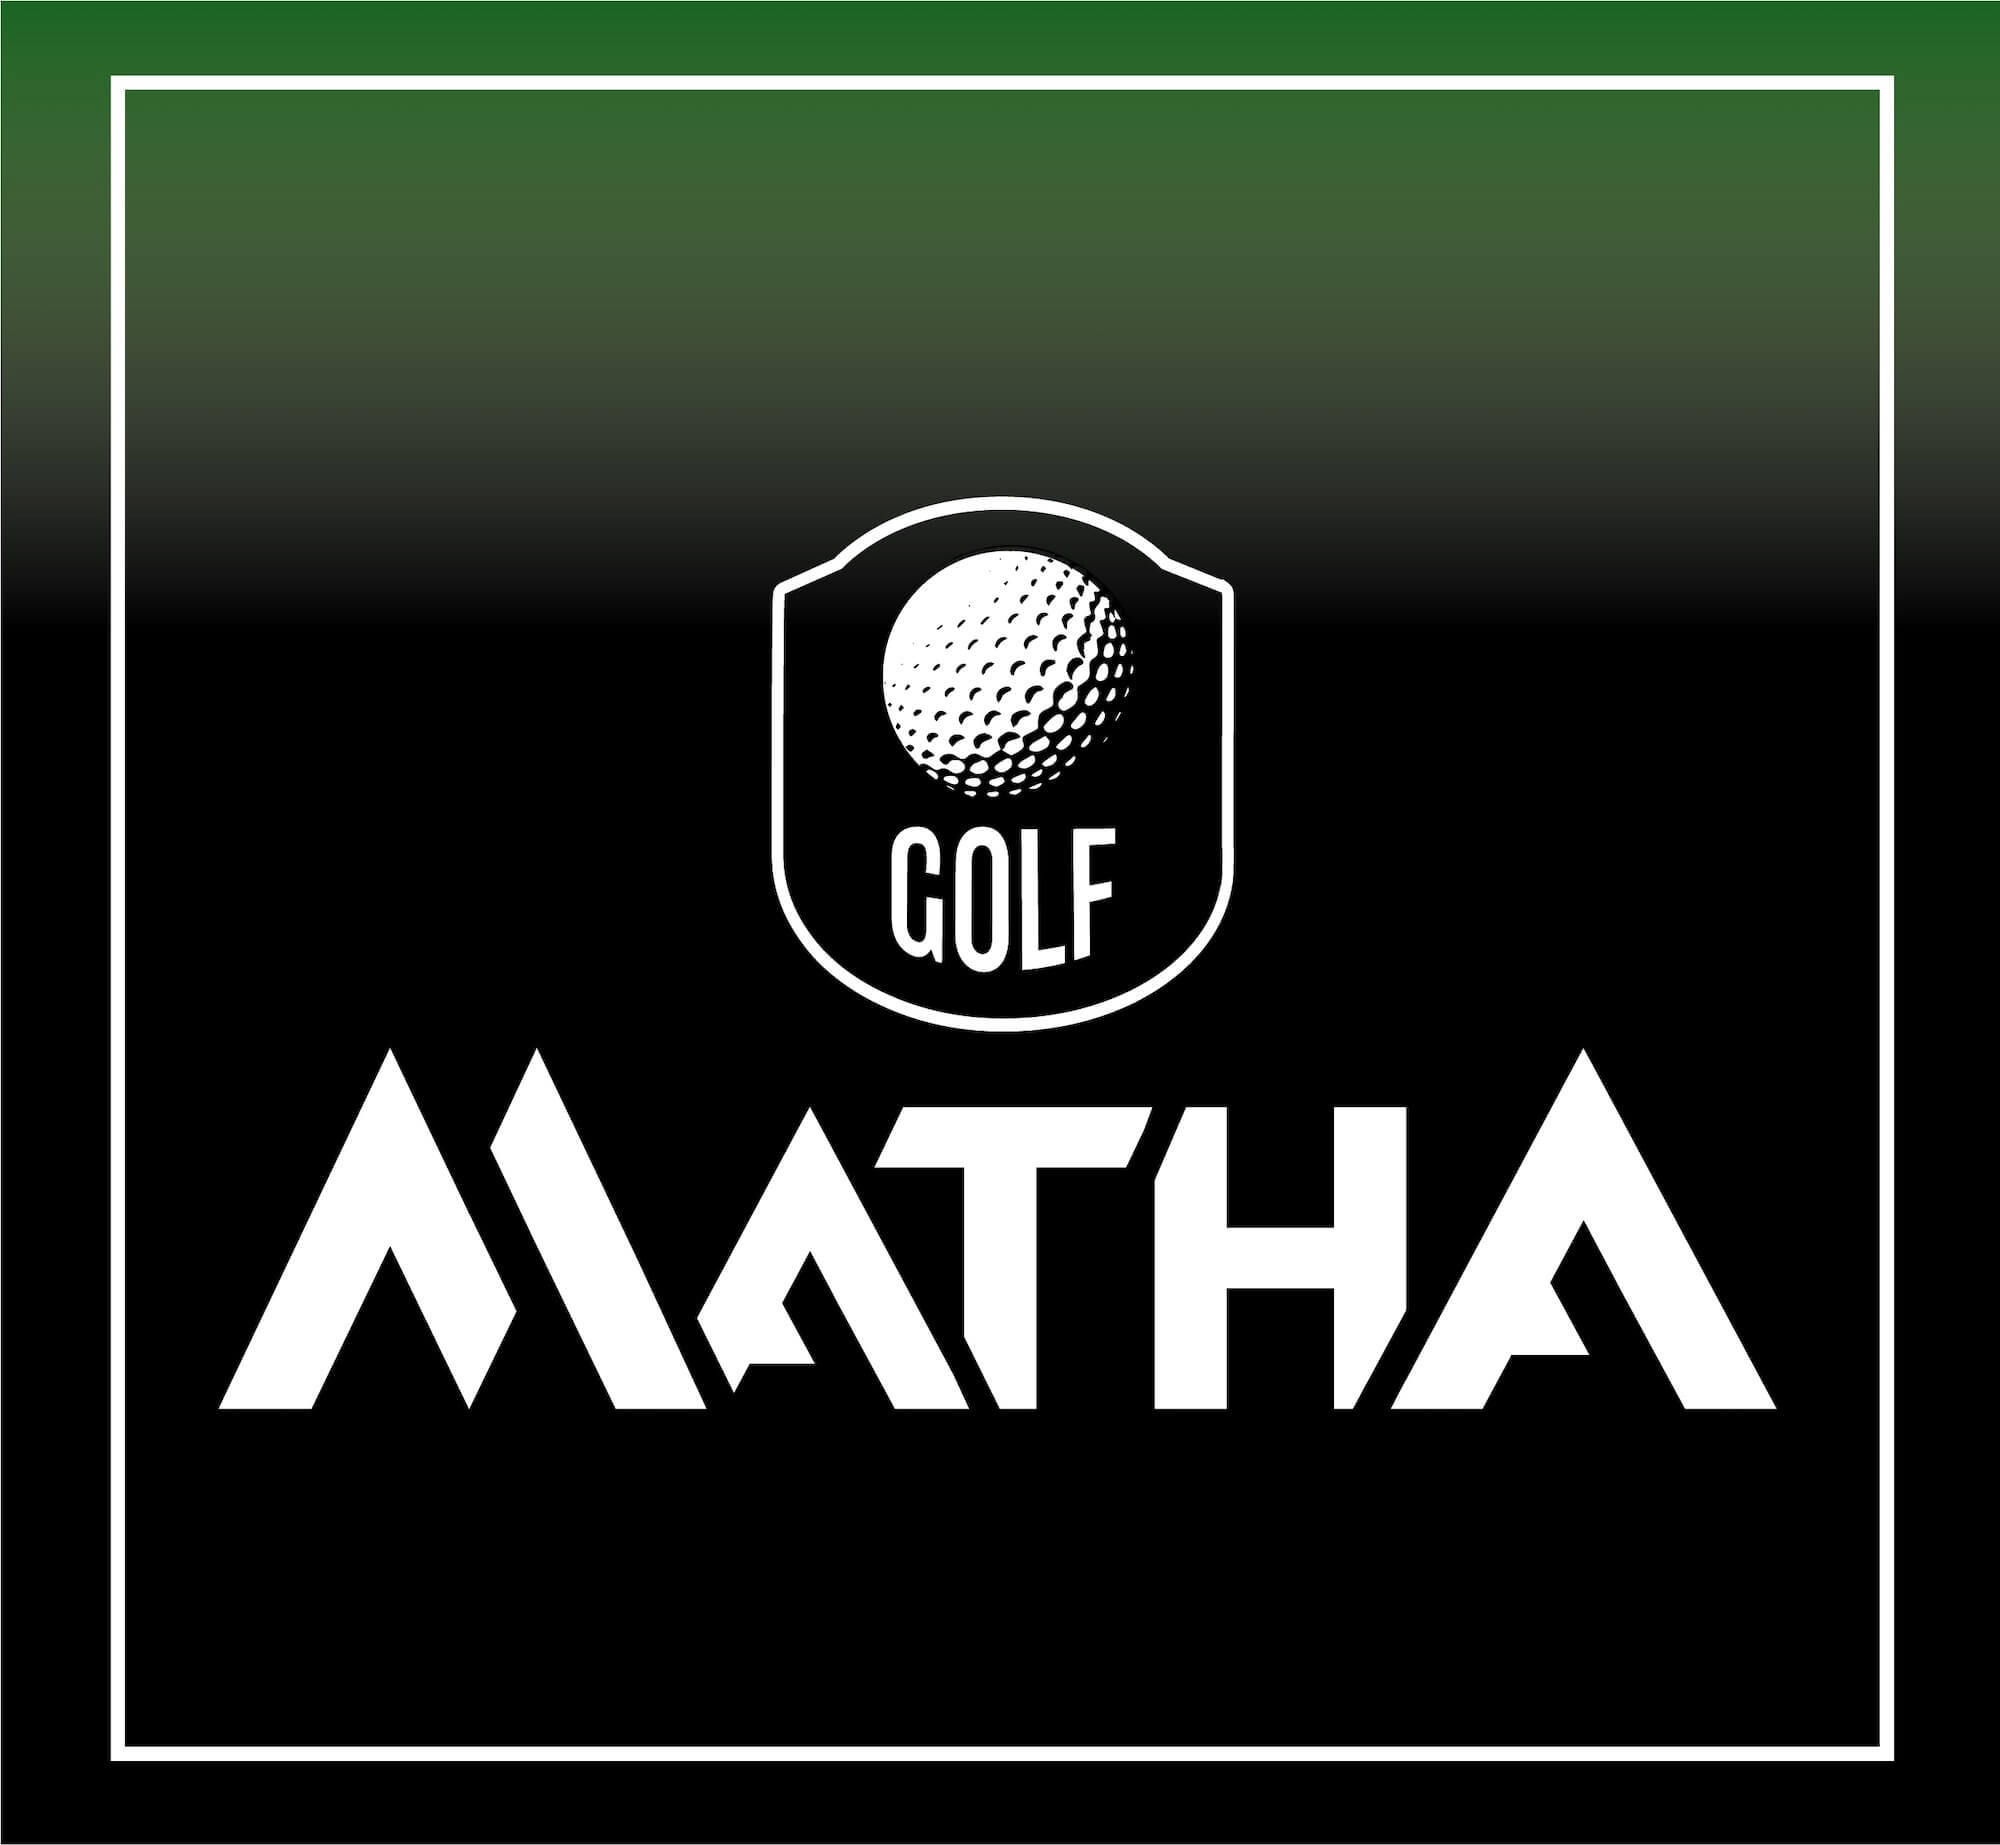 Club de Golf Matha